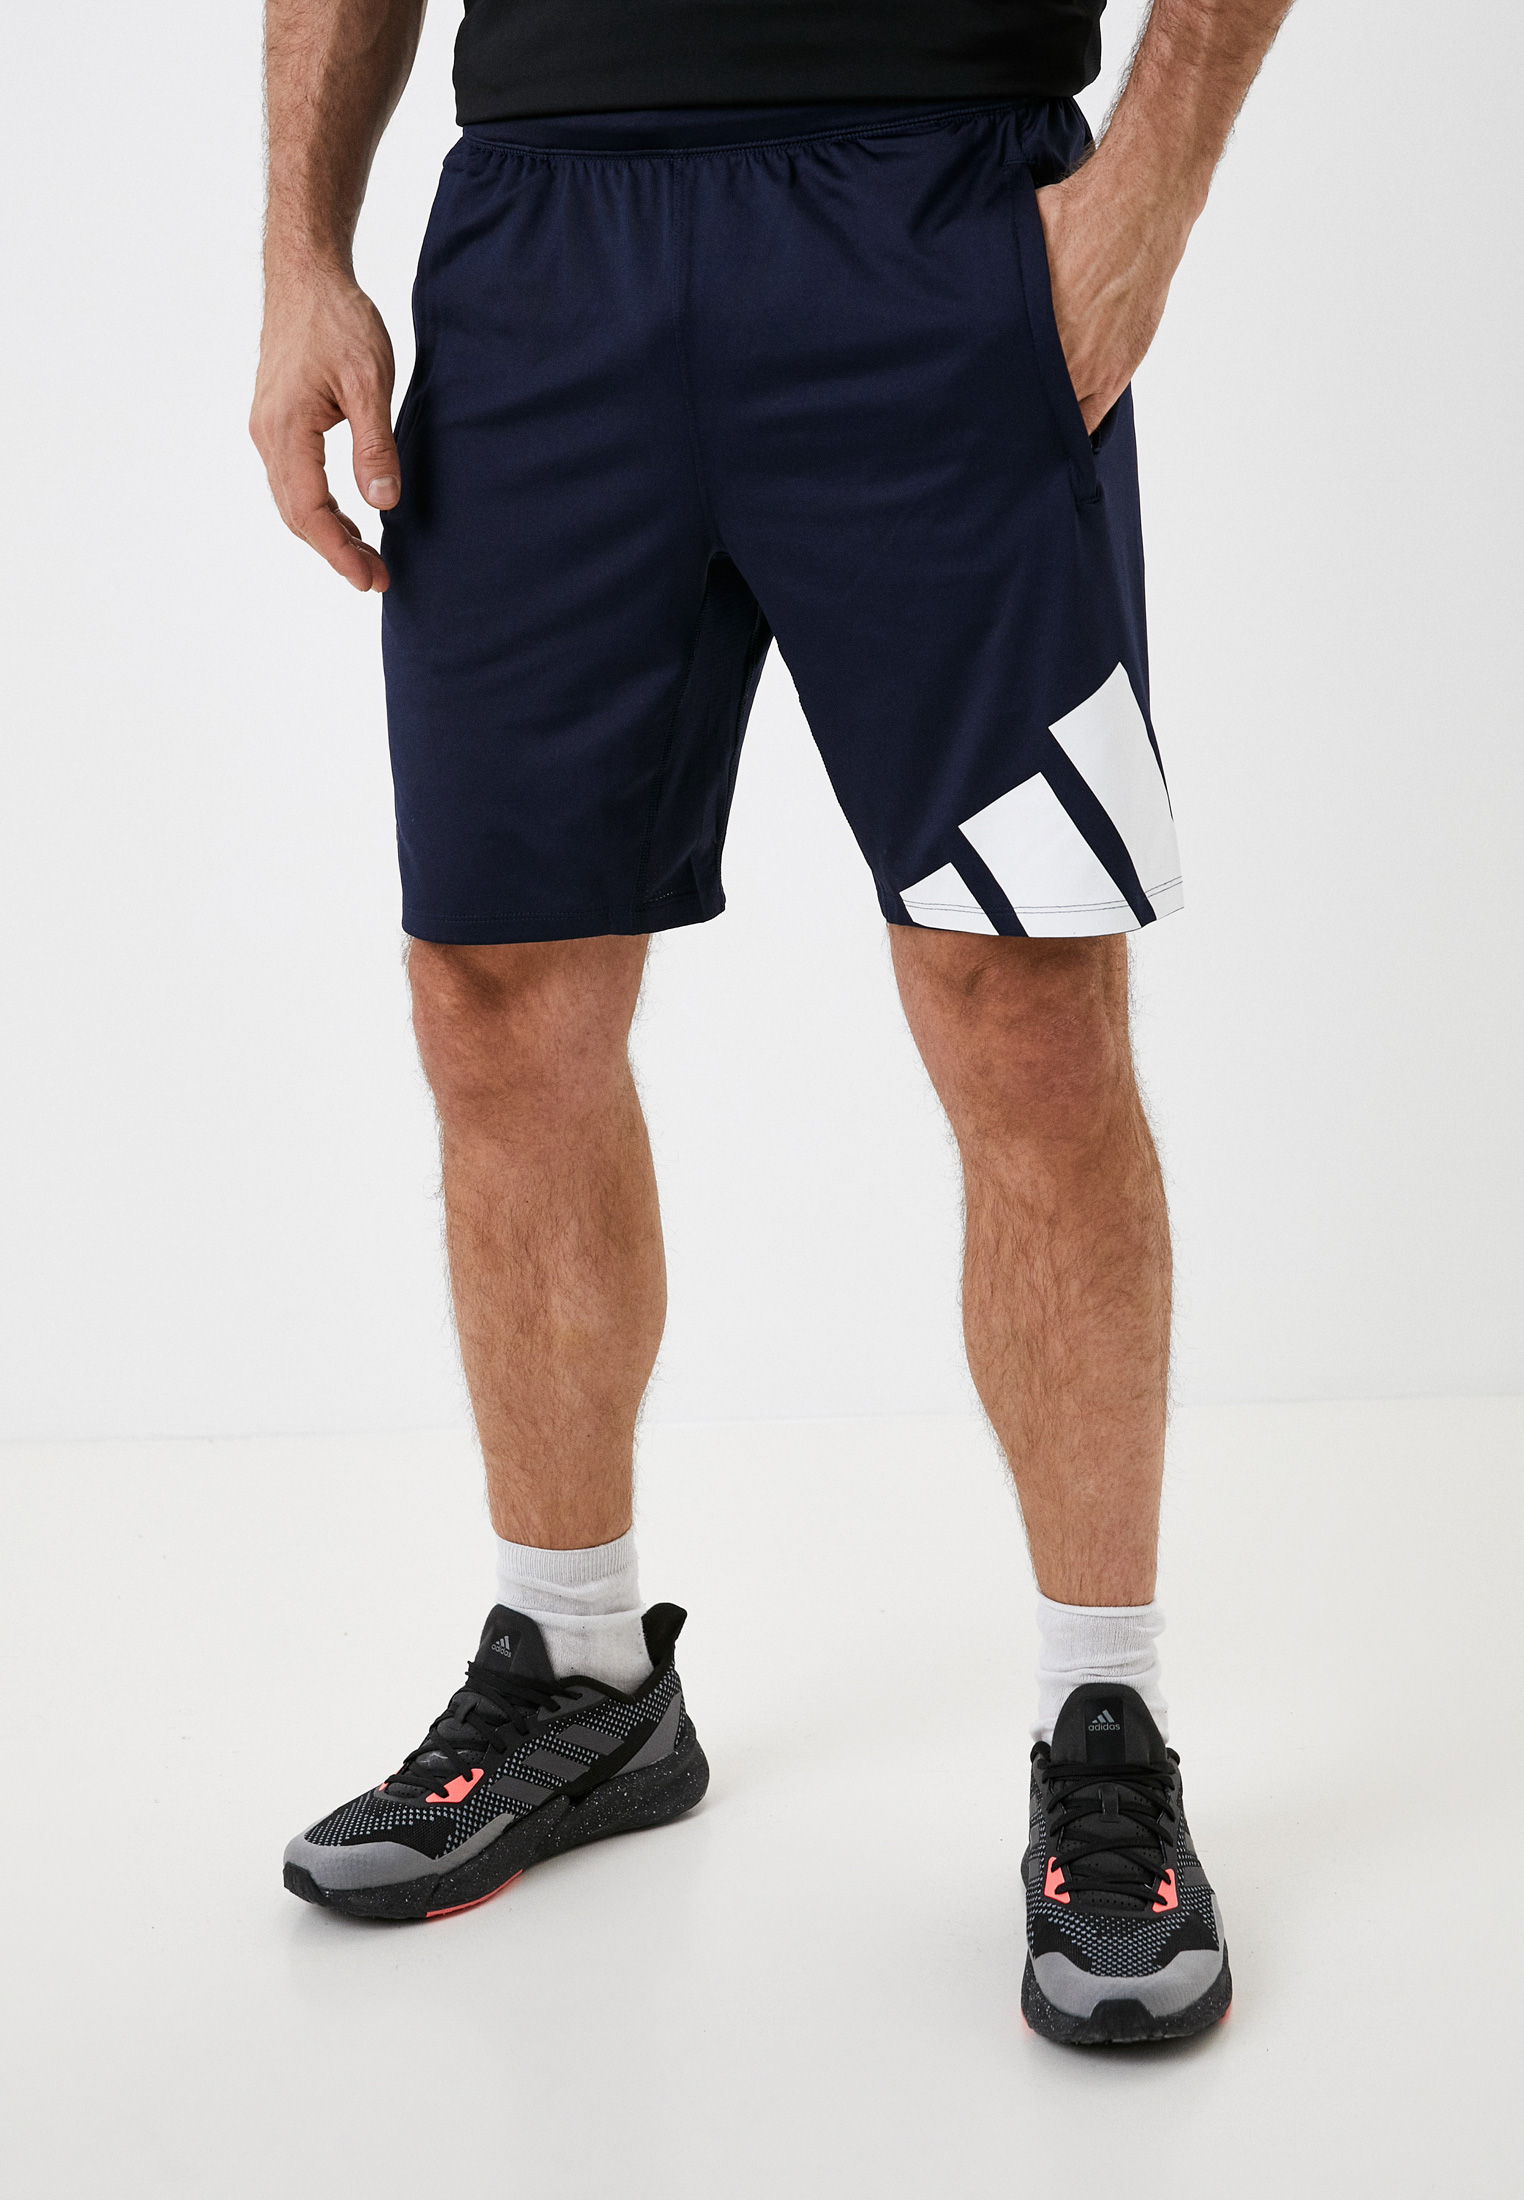 Шорты спортивные adidas 4K 3 BAR SHORT, цвет: синий, RTLABD276201 — купить  в интернет-магазине Lamoda